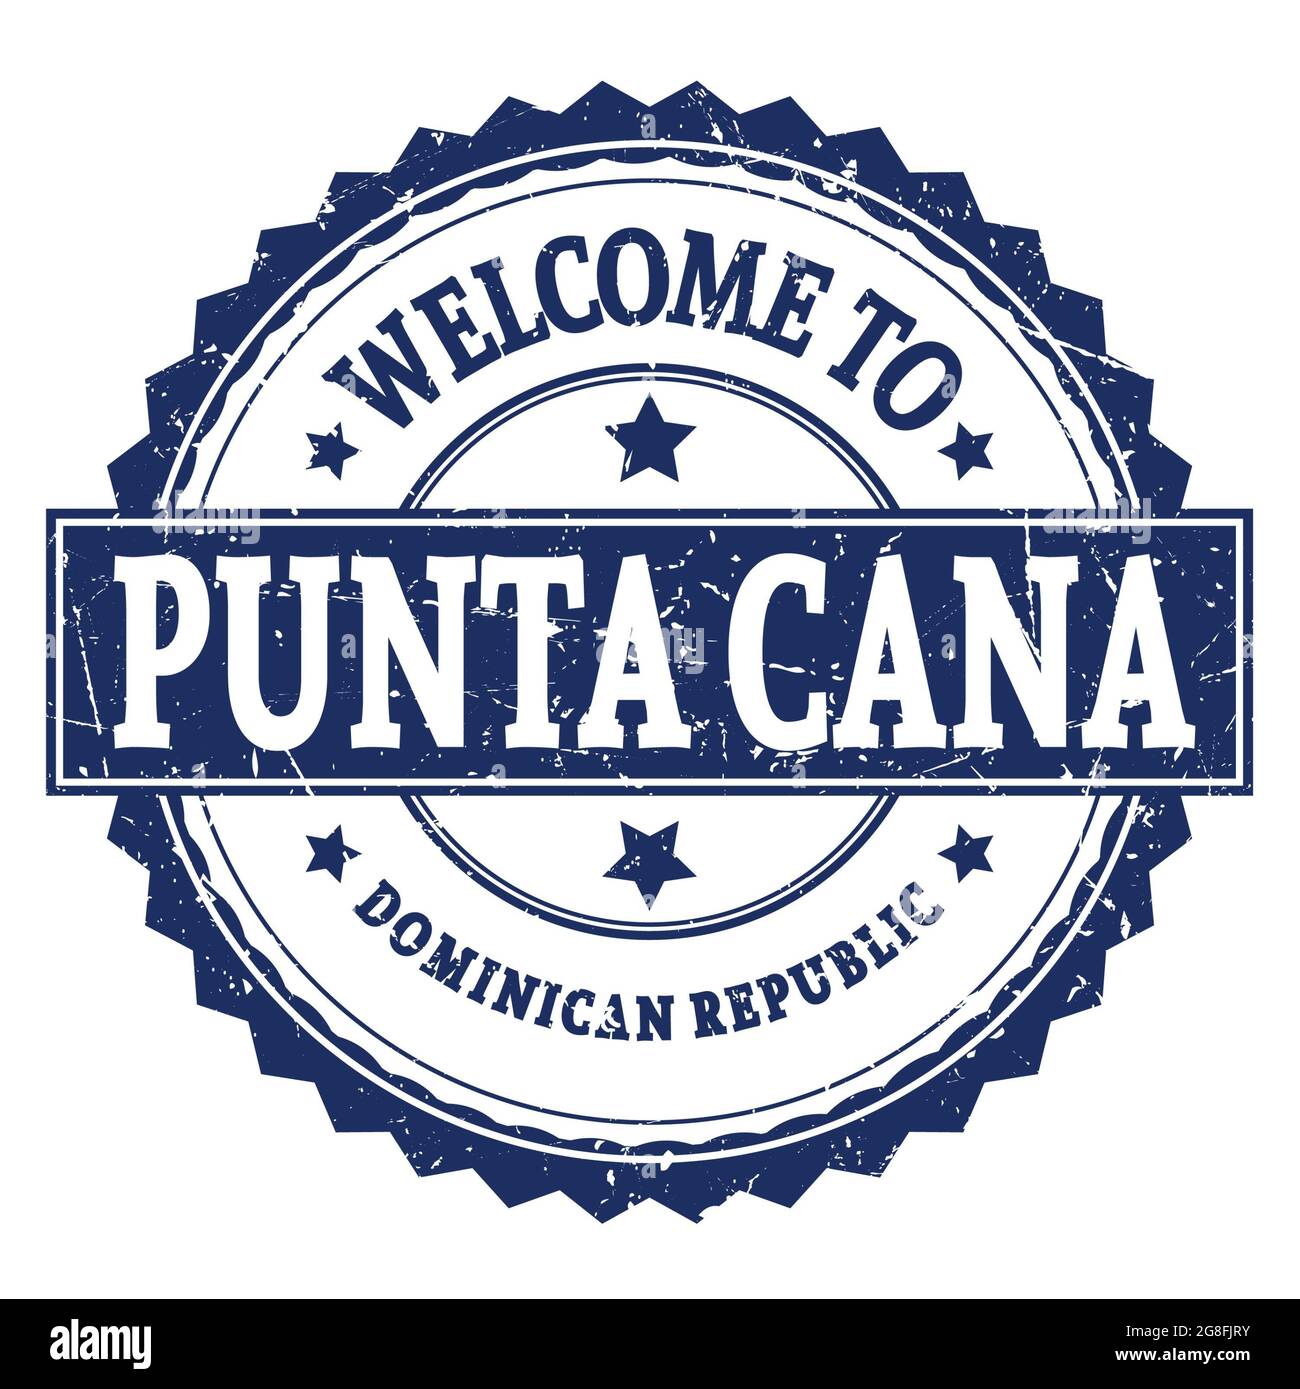 BIENVENUE À PUNTA CANA - RÉPUBLIQUE DOMINICAINE, mots écrits sur le timbre bleu rond en zigzag Banque D'Images